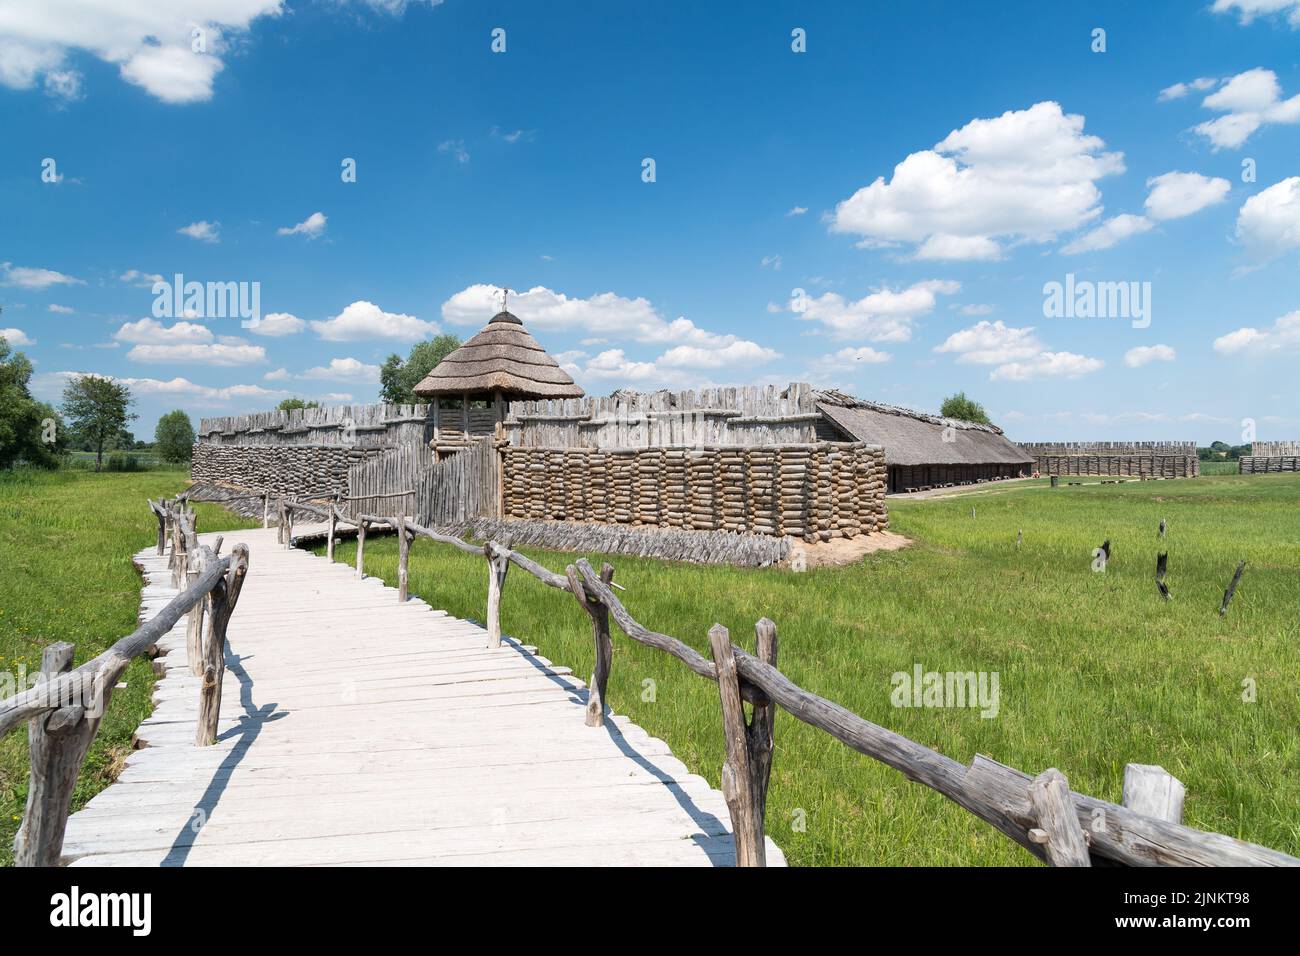 Sitio arqueológico y un museo al aire libre modelo de tamaño natural del asentamiento fortificado de la Edad de Hierro en Biskupin, Polonia © Wojciech Strozyk / Alamy Stock Photo Foto de stock